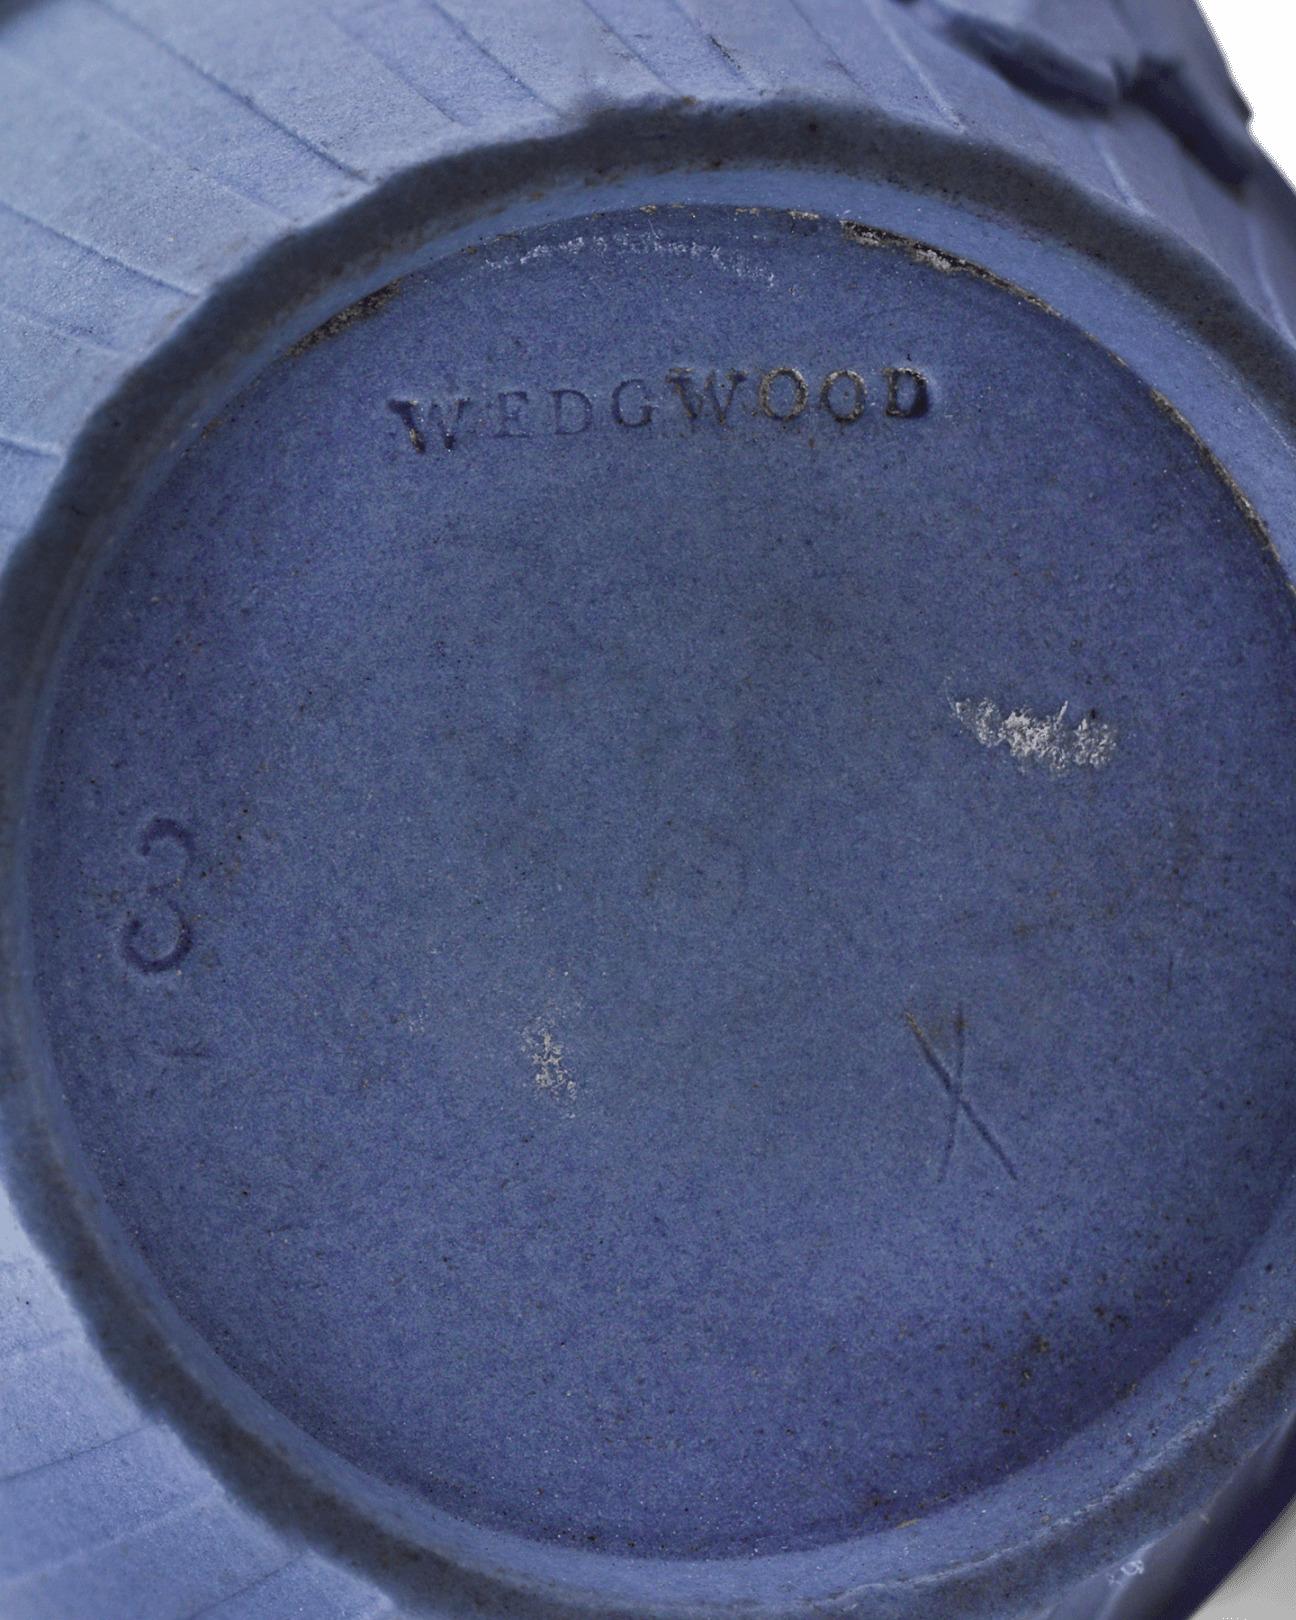 Neoclassical Wedgwood Blue and White Jasperware Creamer Jug